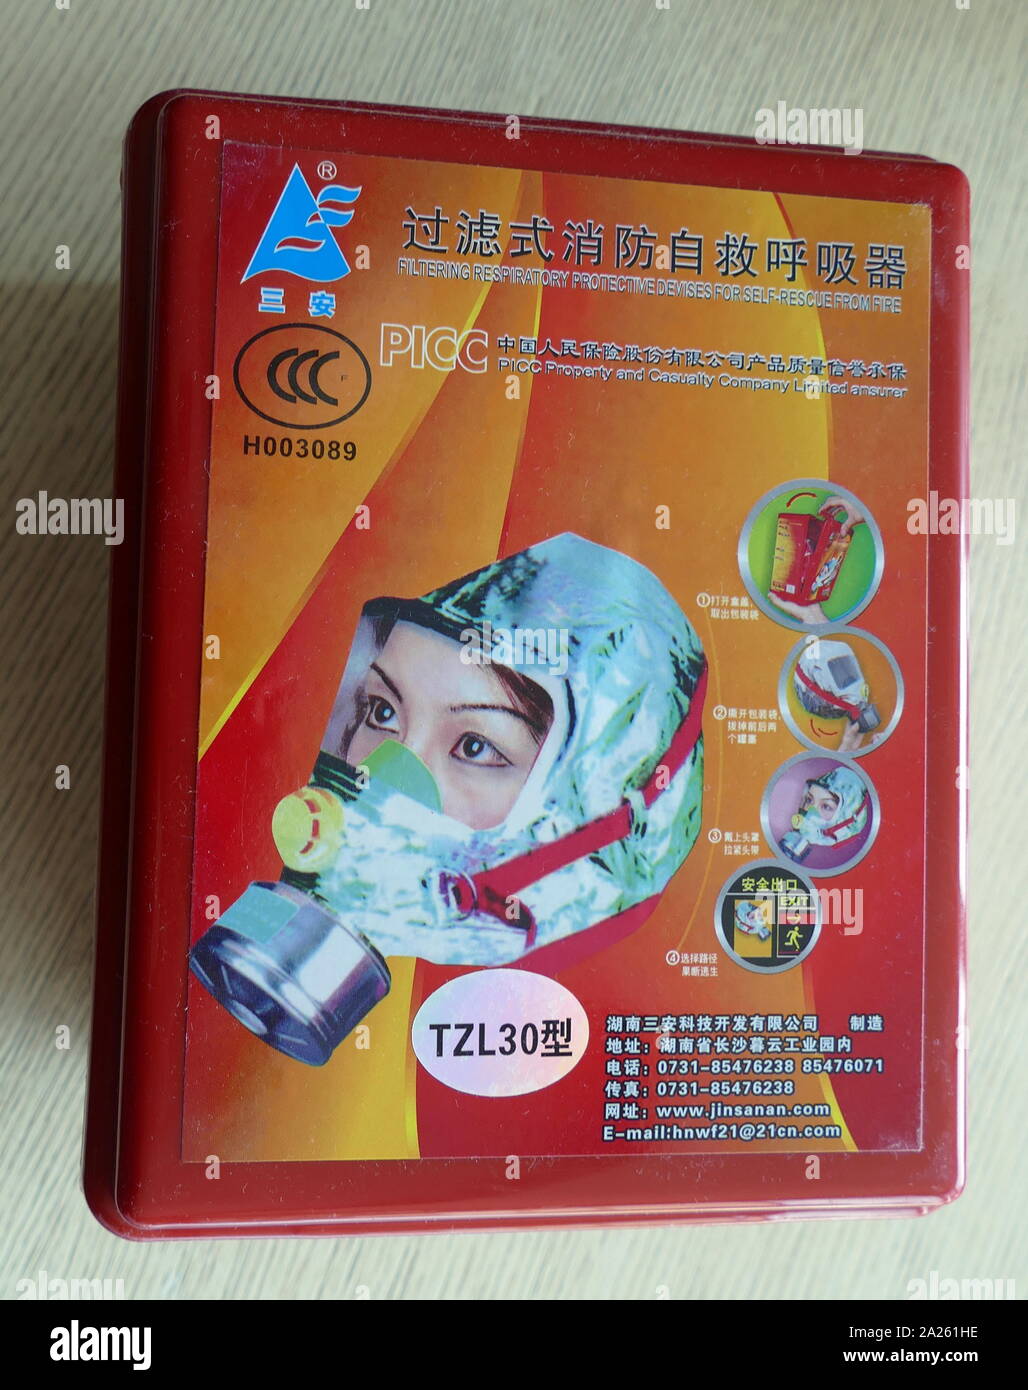 Prévention incendie (fumée masque masque), chinois, 2019 Banque D'Images